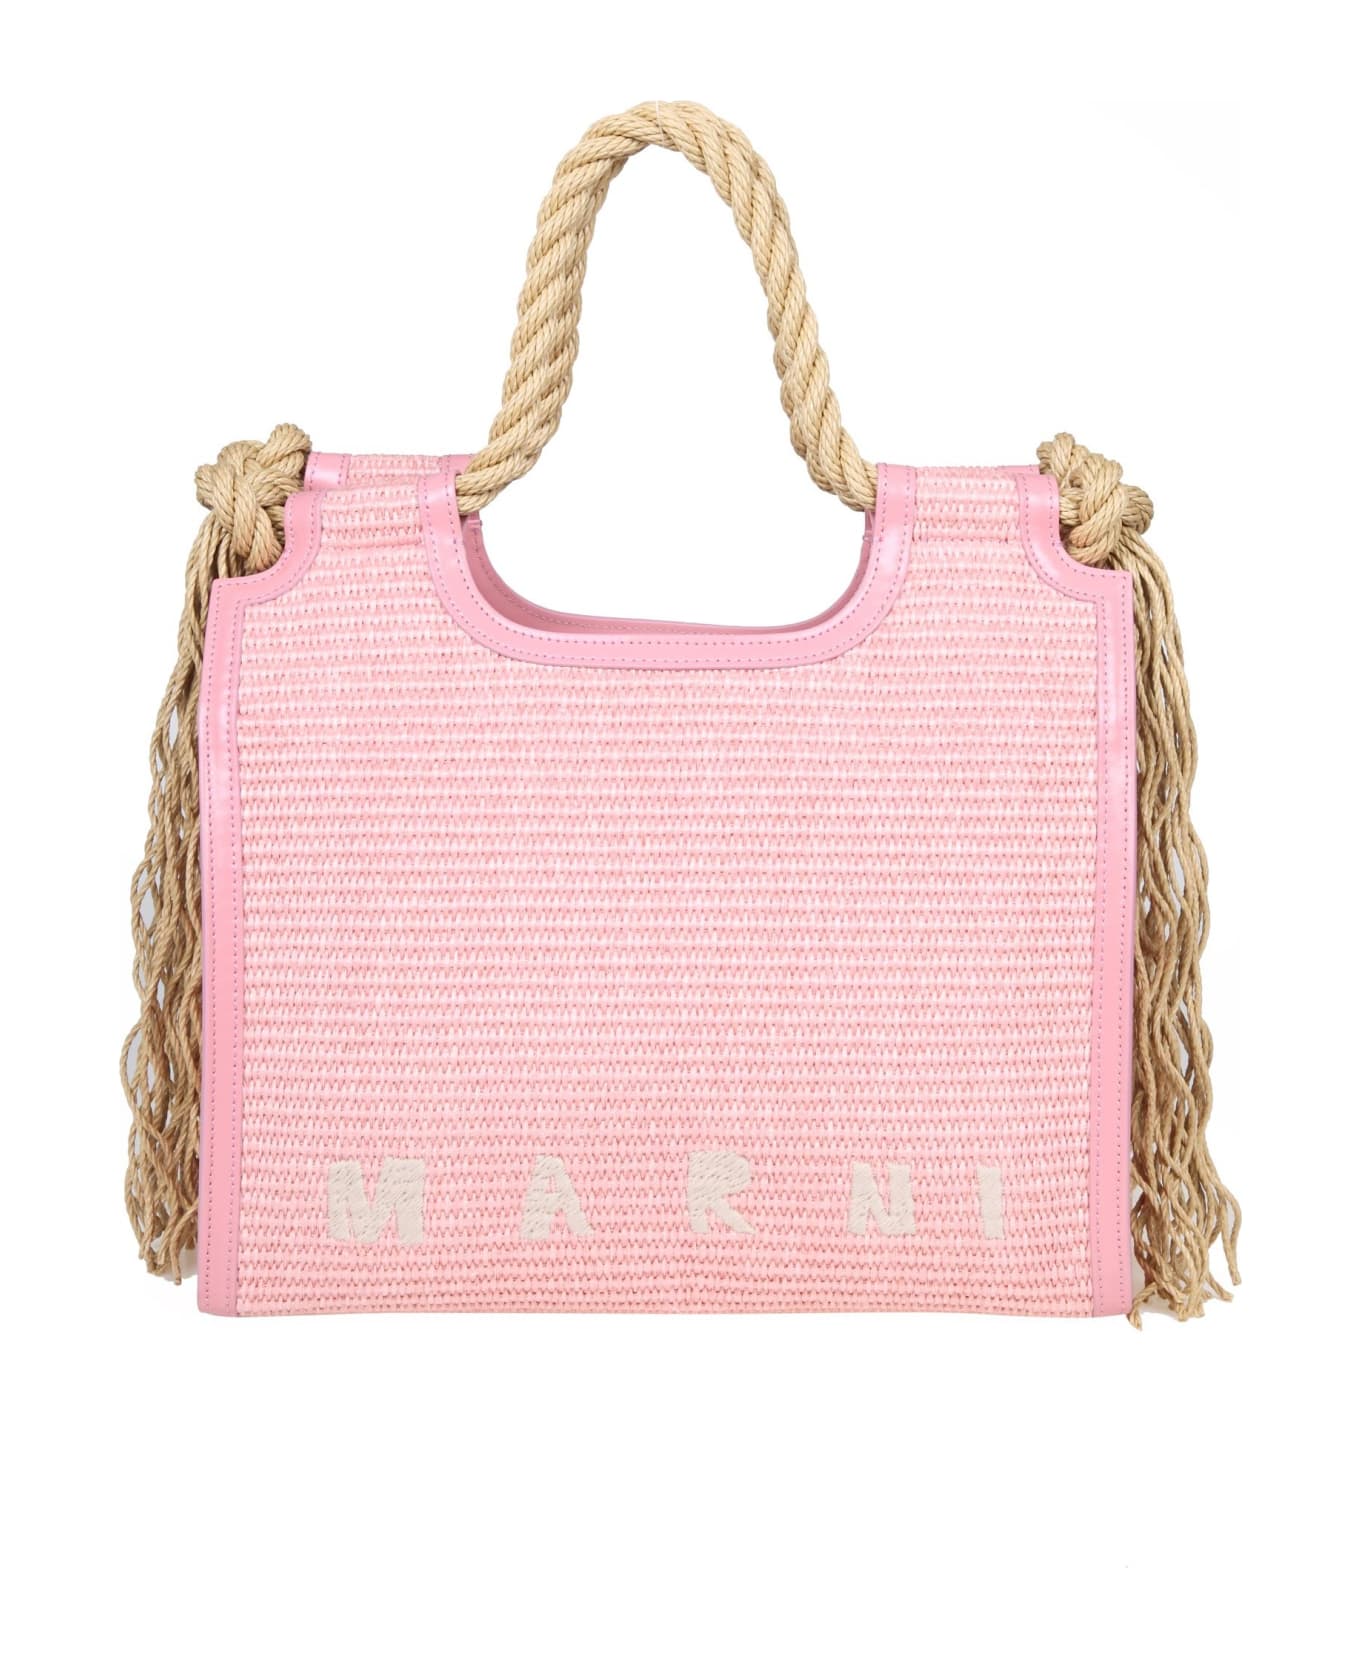 Marni Raffia Handbag Pink Color - PINK/NEUTRALS